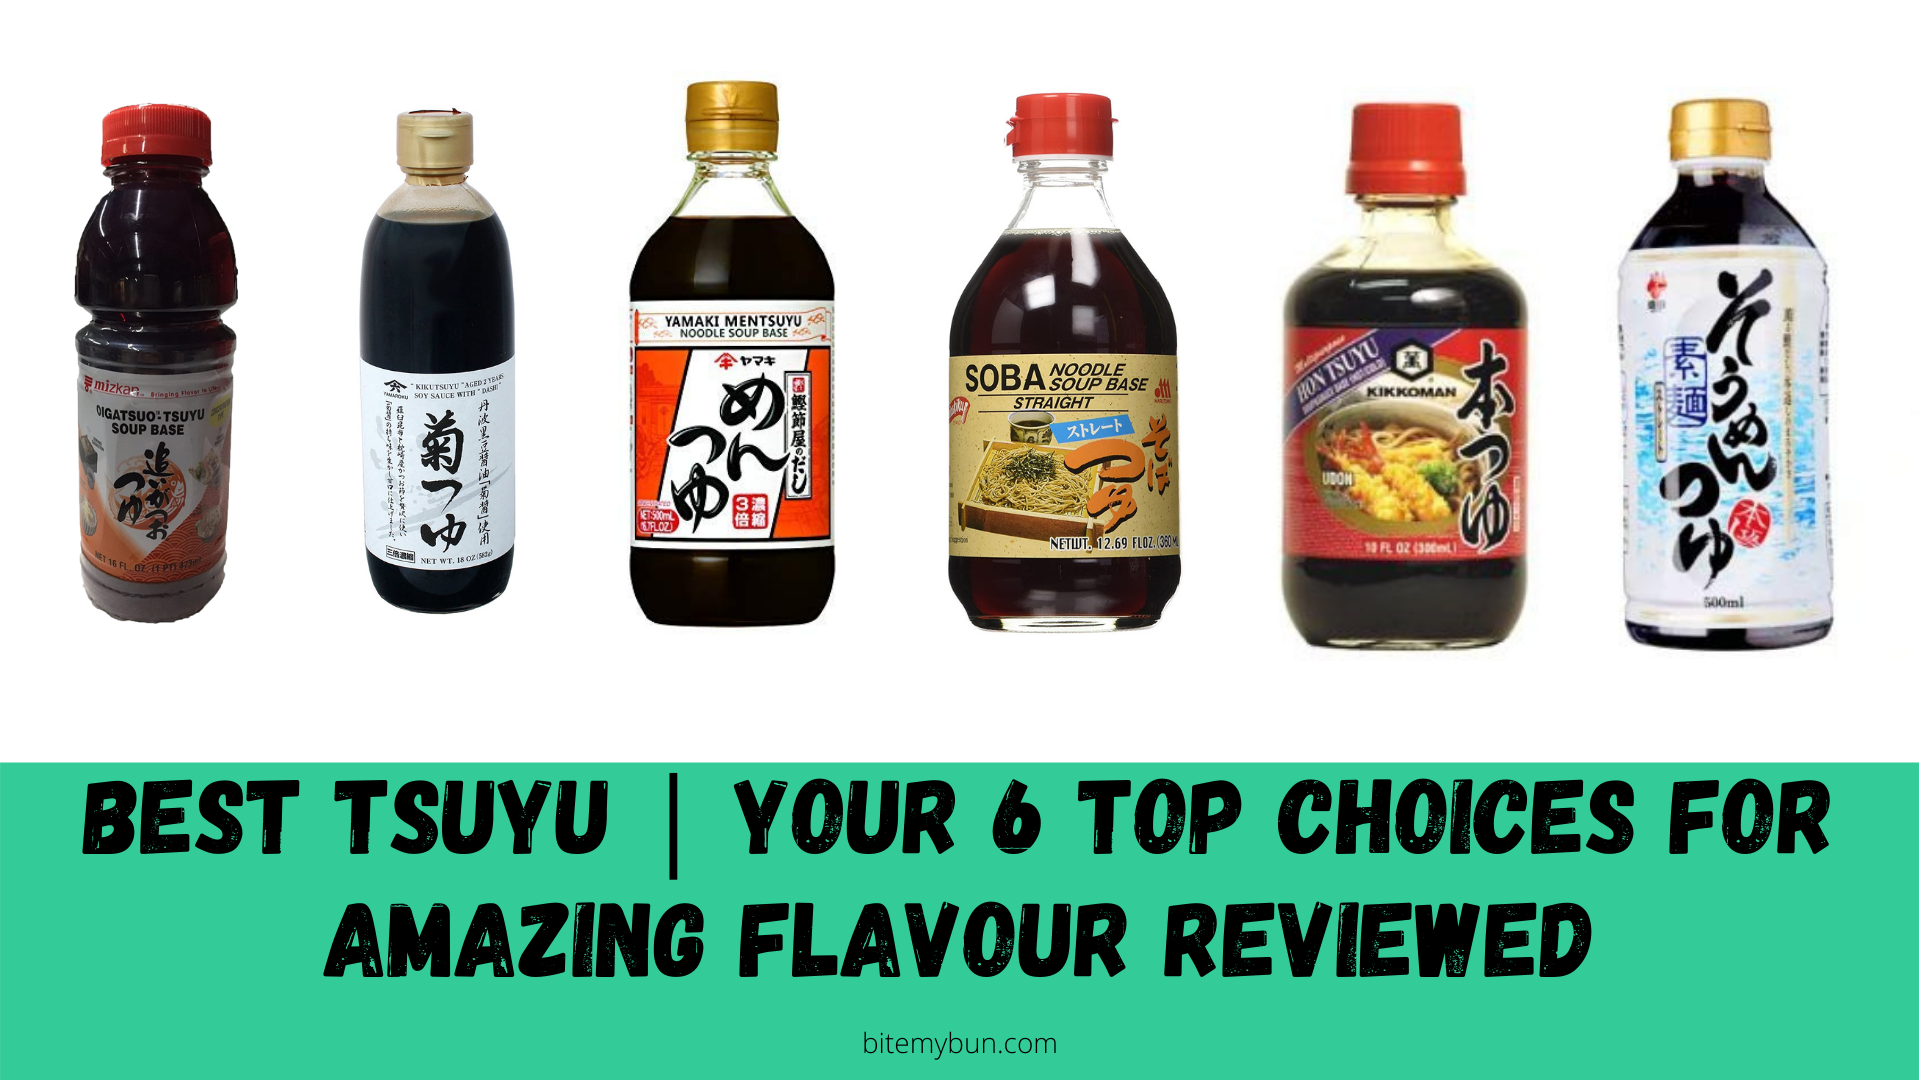 Melhor tsuyu | Suas 6 principais escolhas para um sabor incrível analisadas